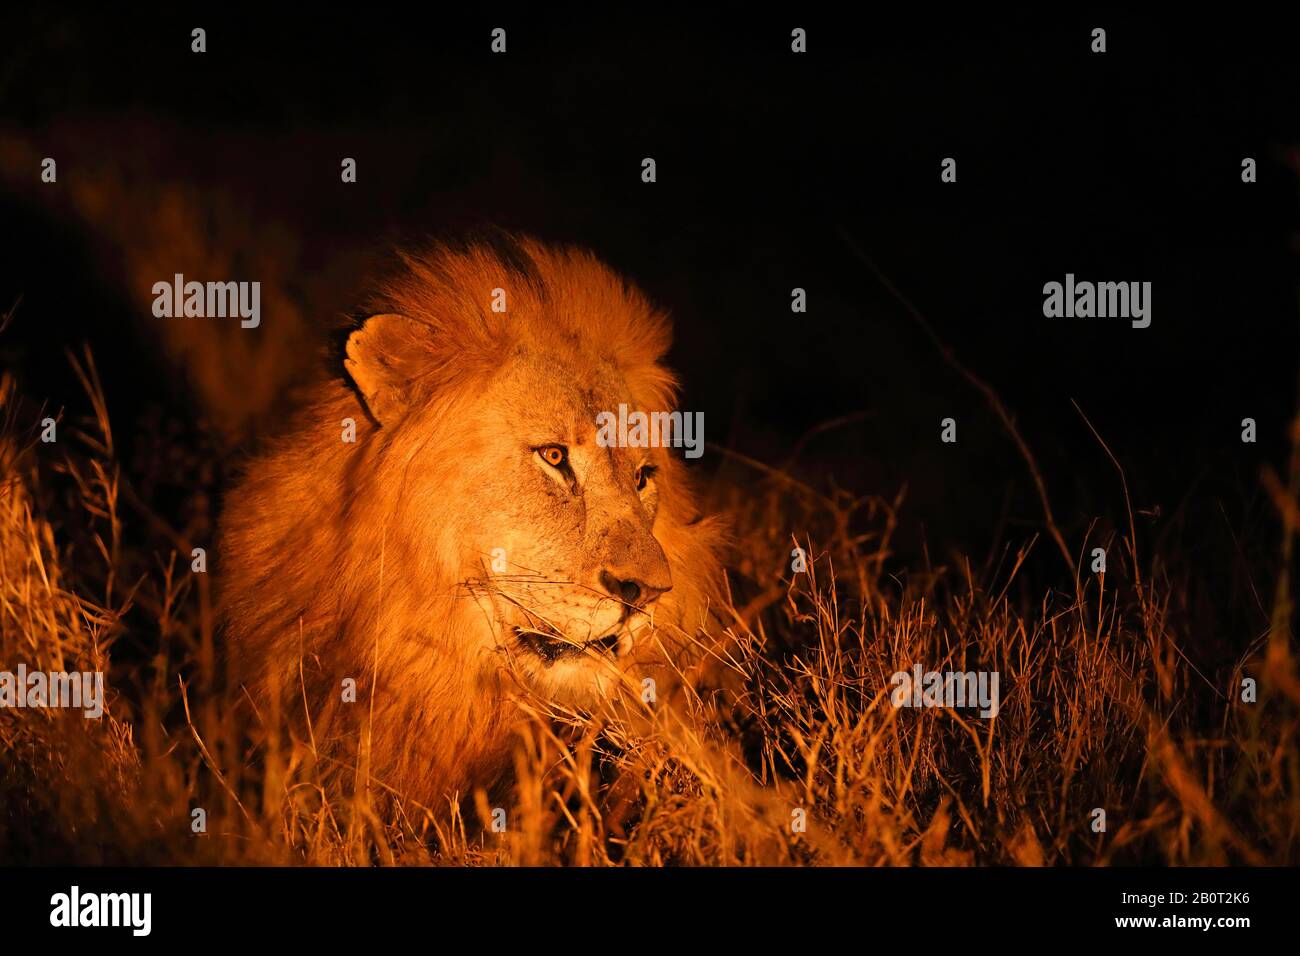 Lion (Panthera leo), männlicher Löwe in der Nacht, Porträt, Südafrika, Zimanga Game Reserve Stockfoto